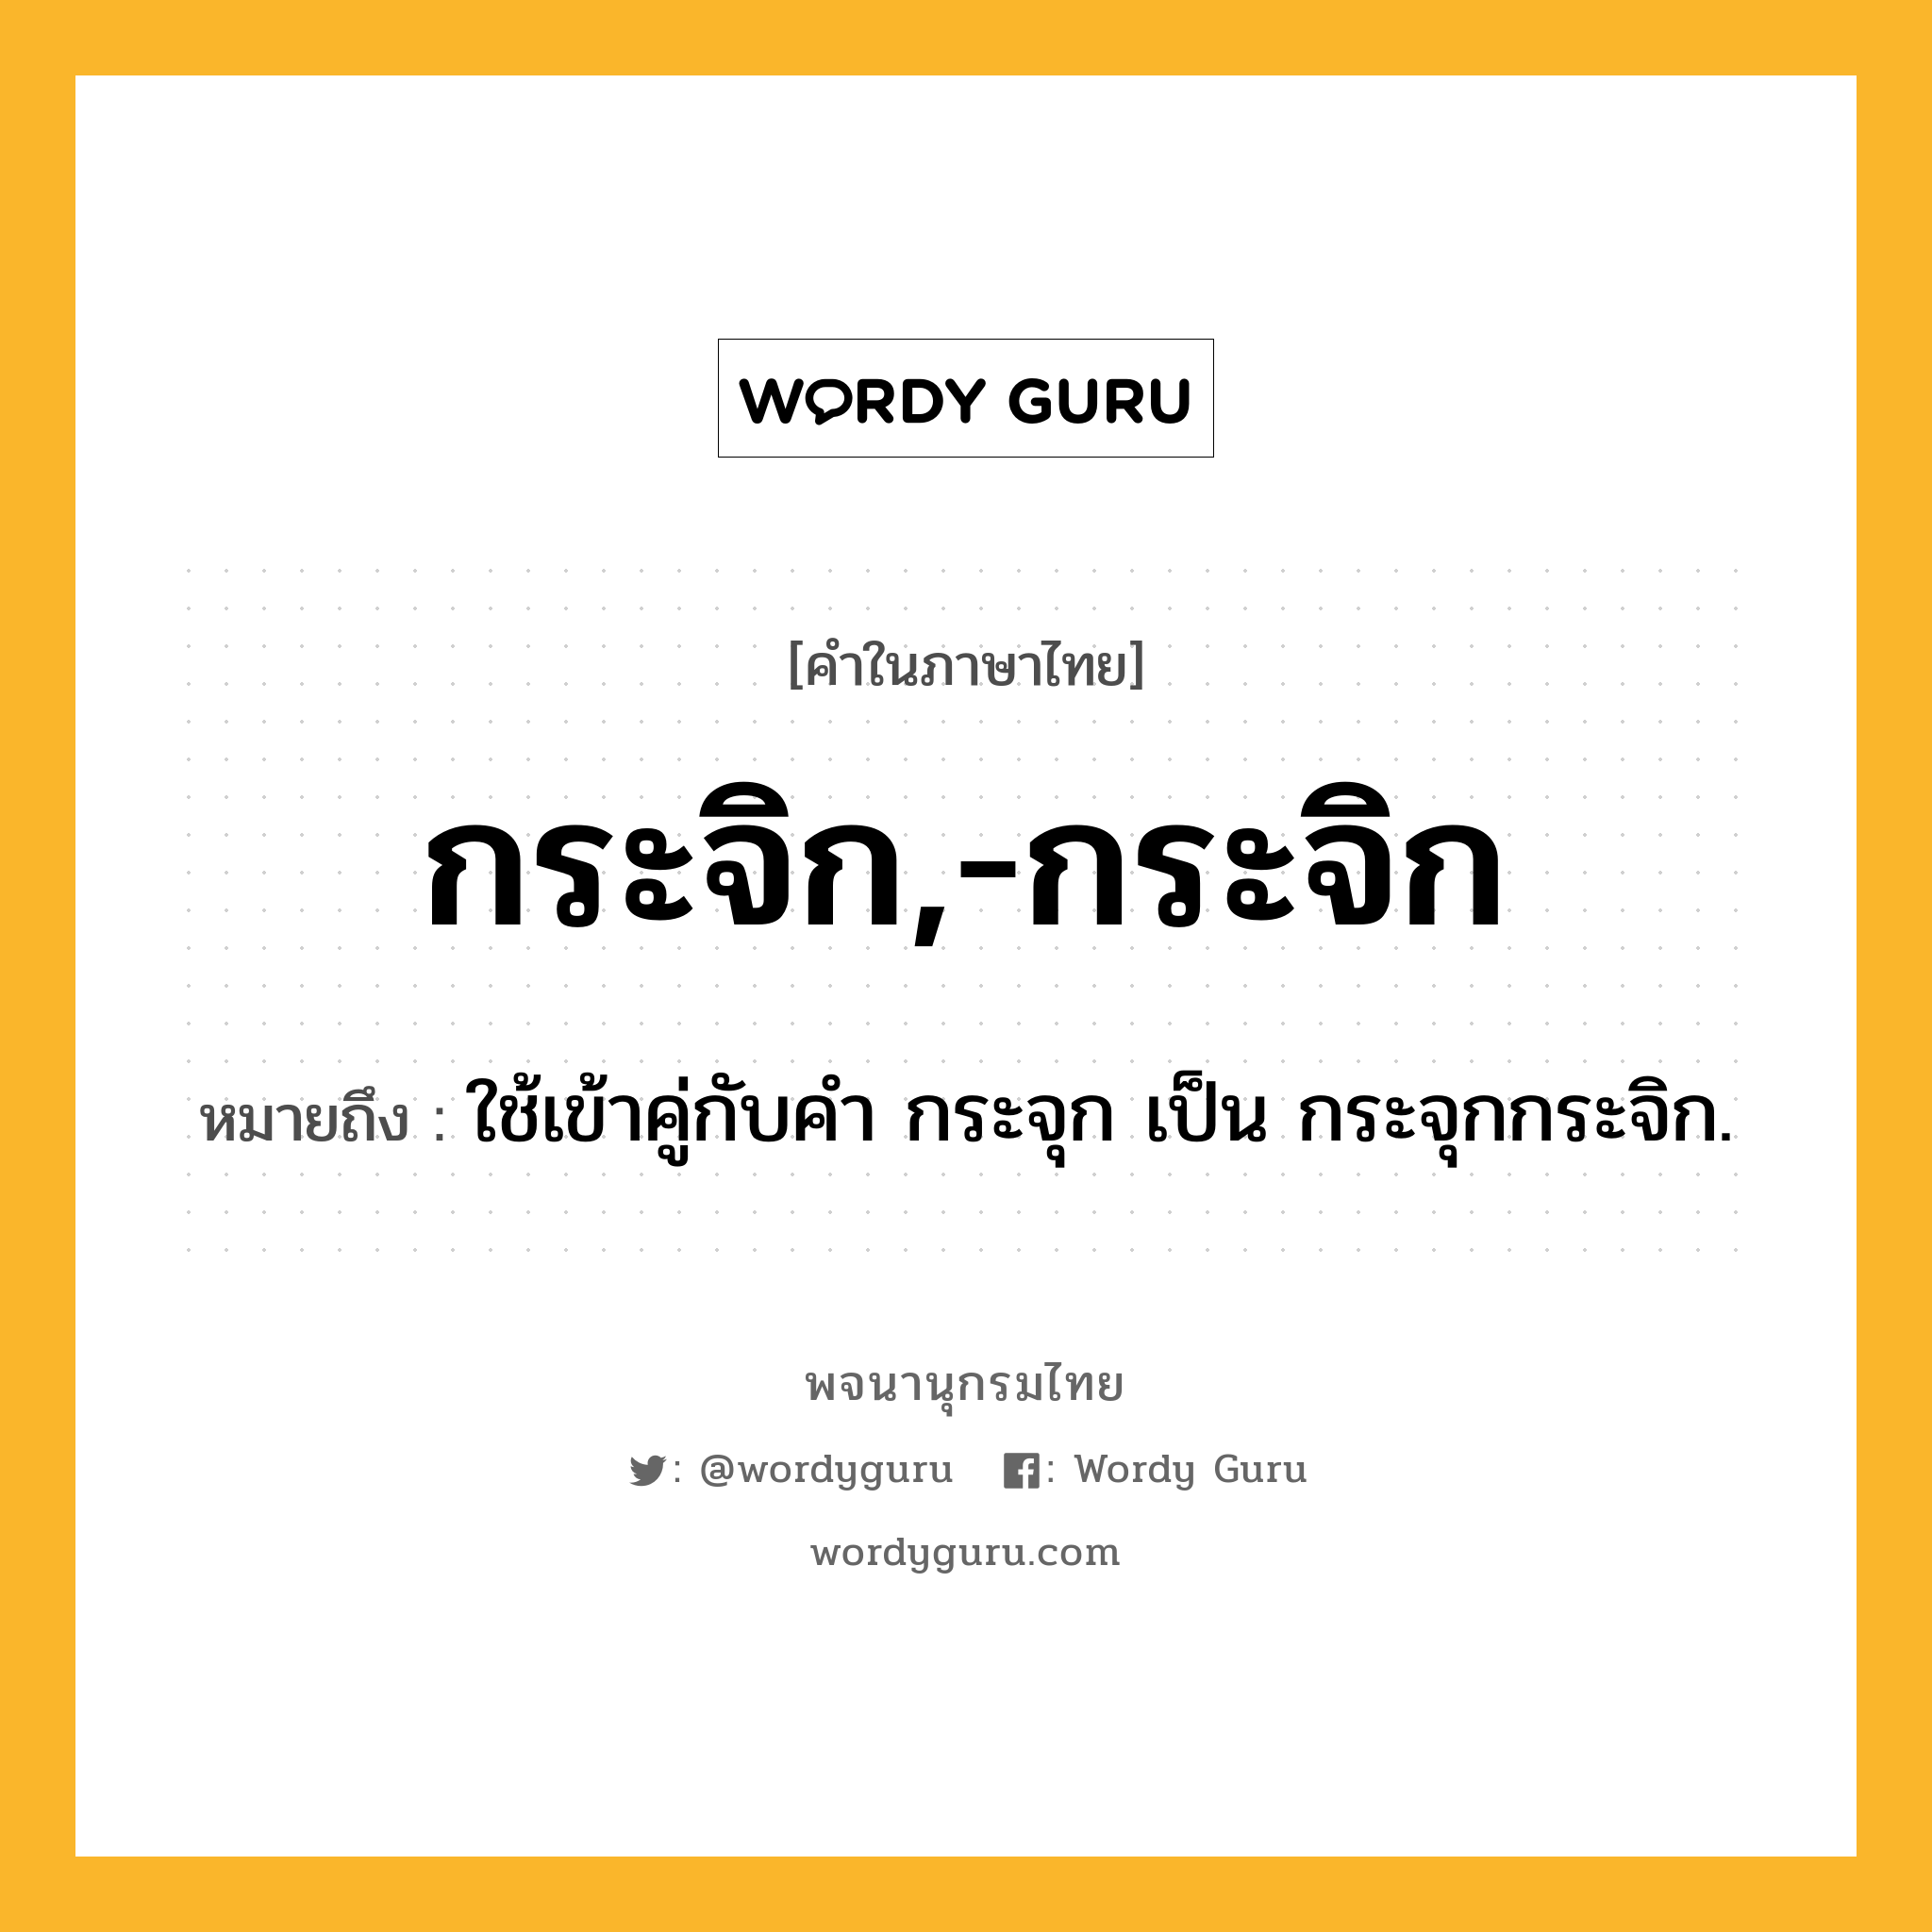 กระจิก,-กระจิก ความหมาย หมายถึงอะไร?, คำในภาษาไทย กระจิก,-กระจิก หมายถึง ใช้เข้าคู่กับคํา กระจุก เป็น กระจุกกระจิก.